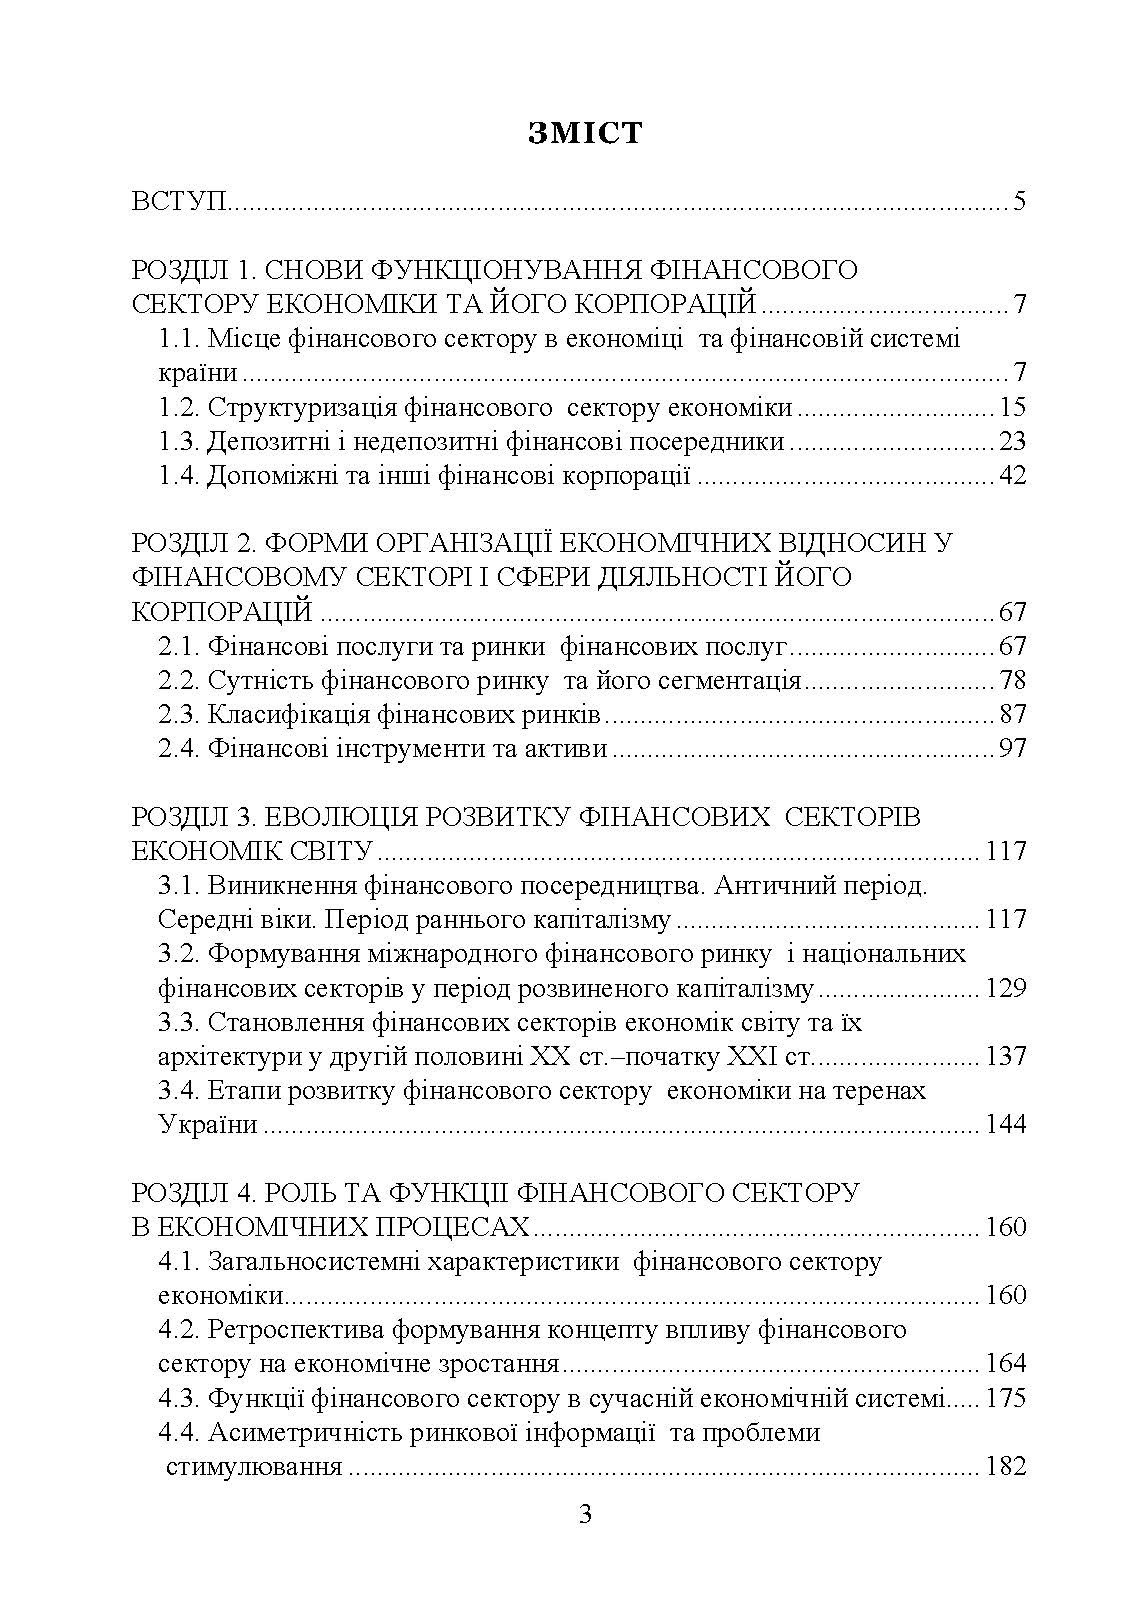 Економіка фінансового сектору (2020 год)). Автор — Коваленко Ю. М.. 